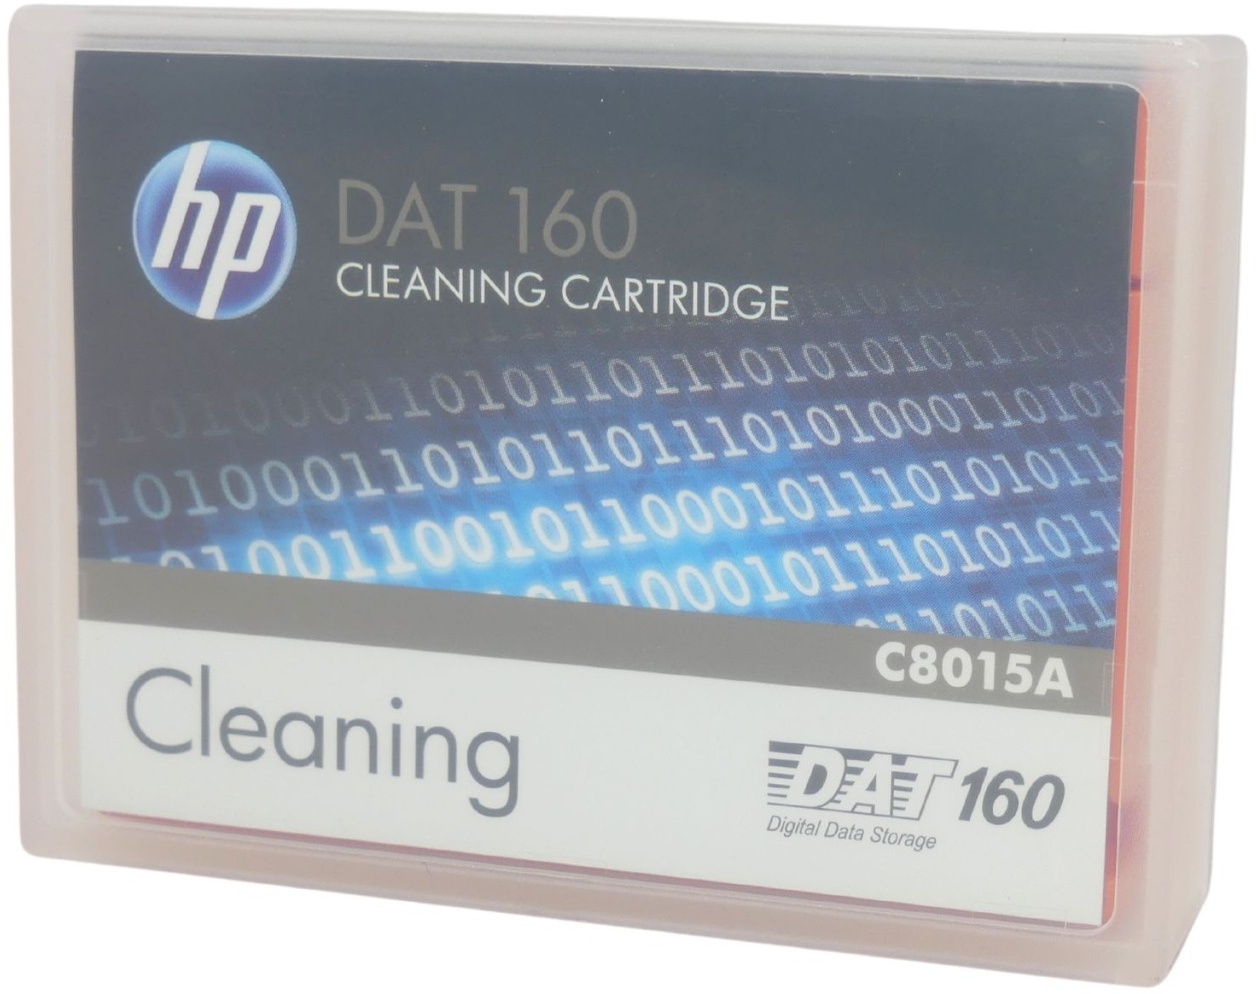 HPE DAT 160 Reinigungskassette II C8015A Cleaning für HPE DAT 160